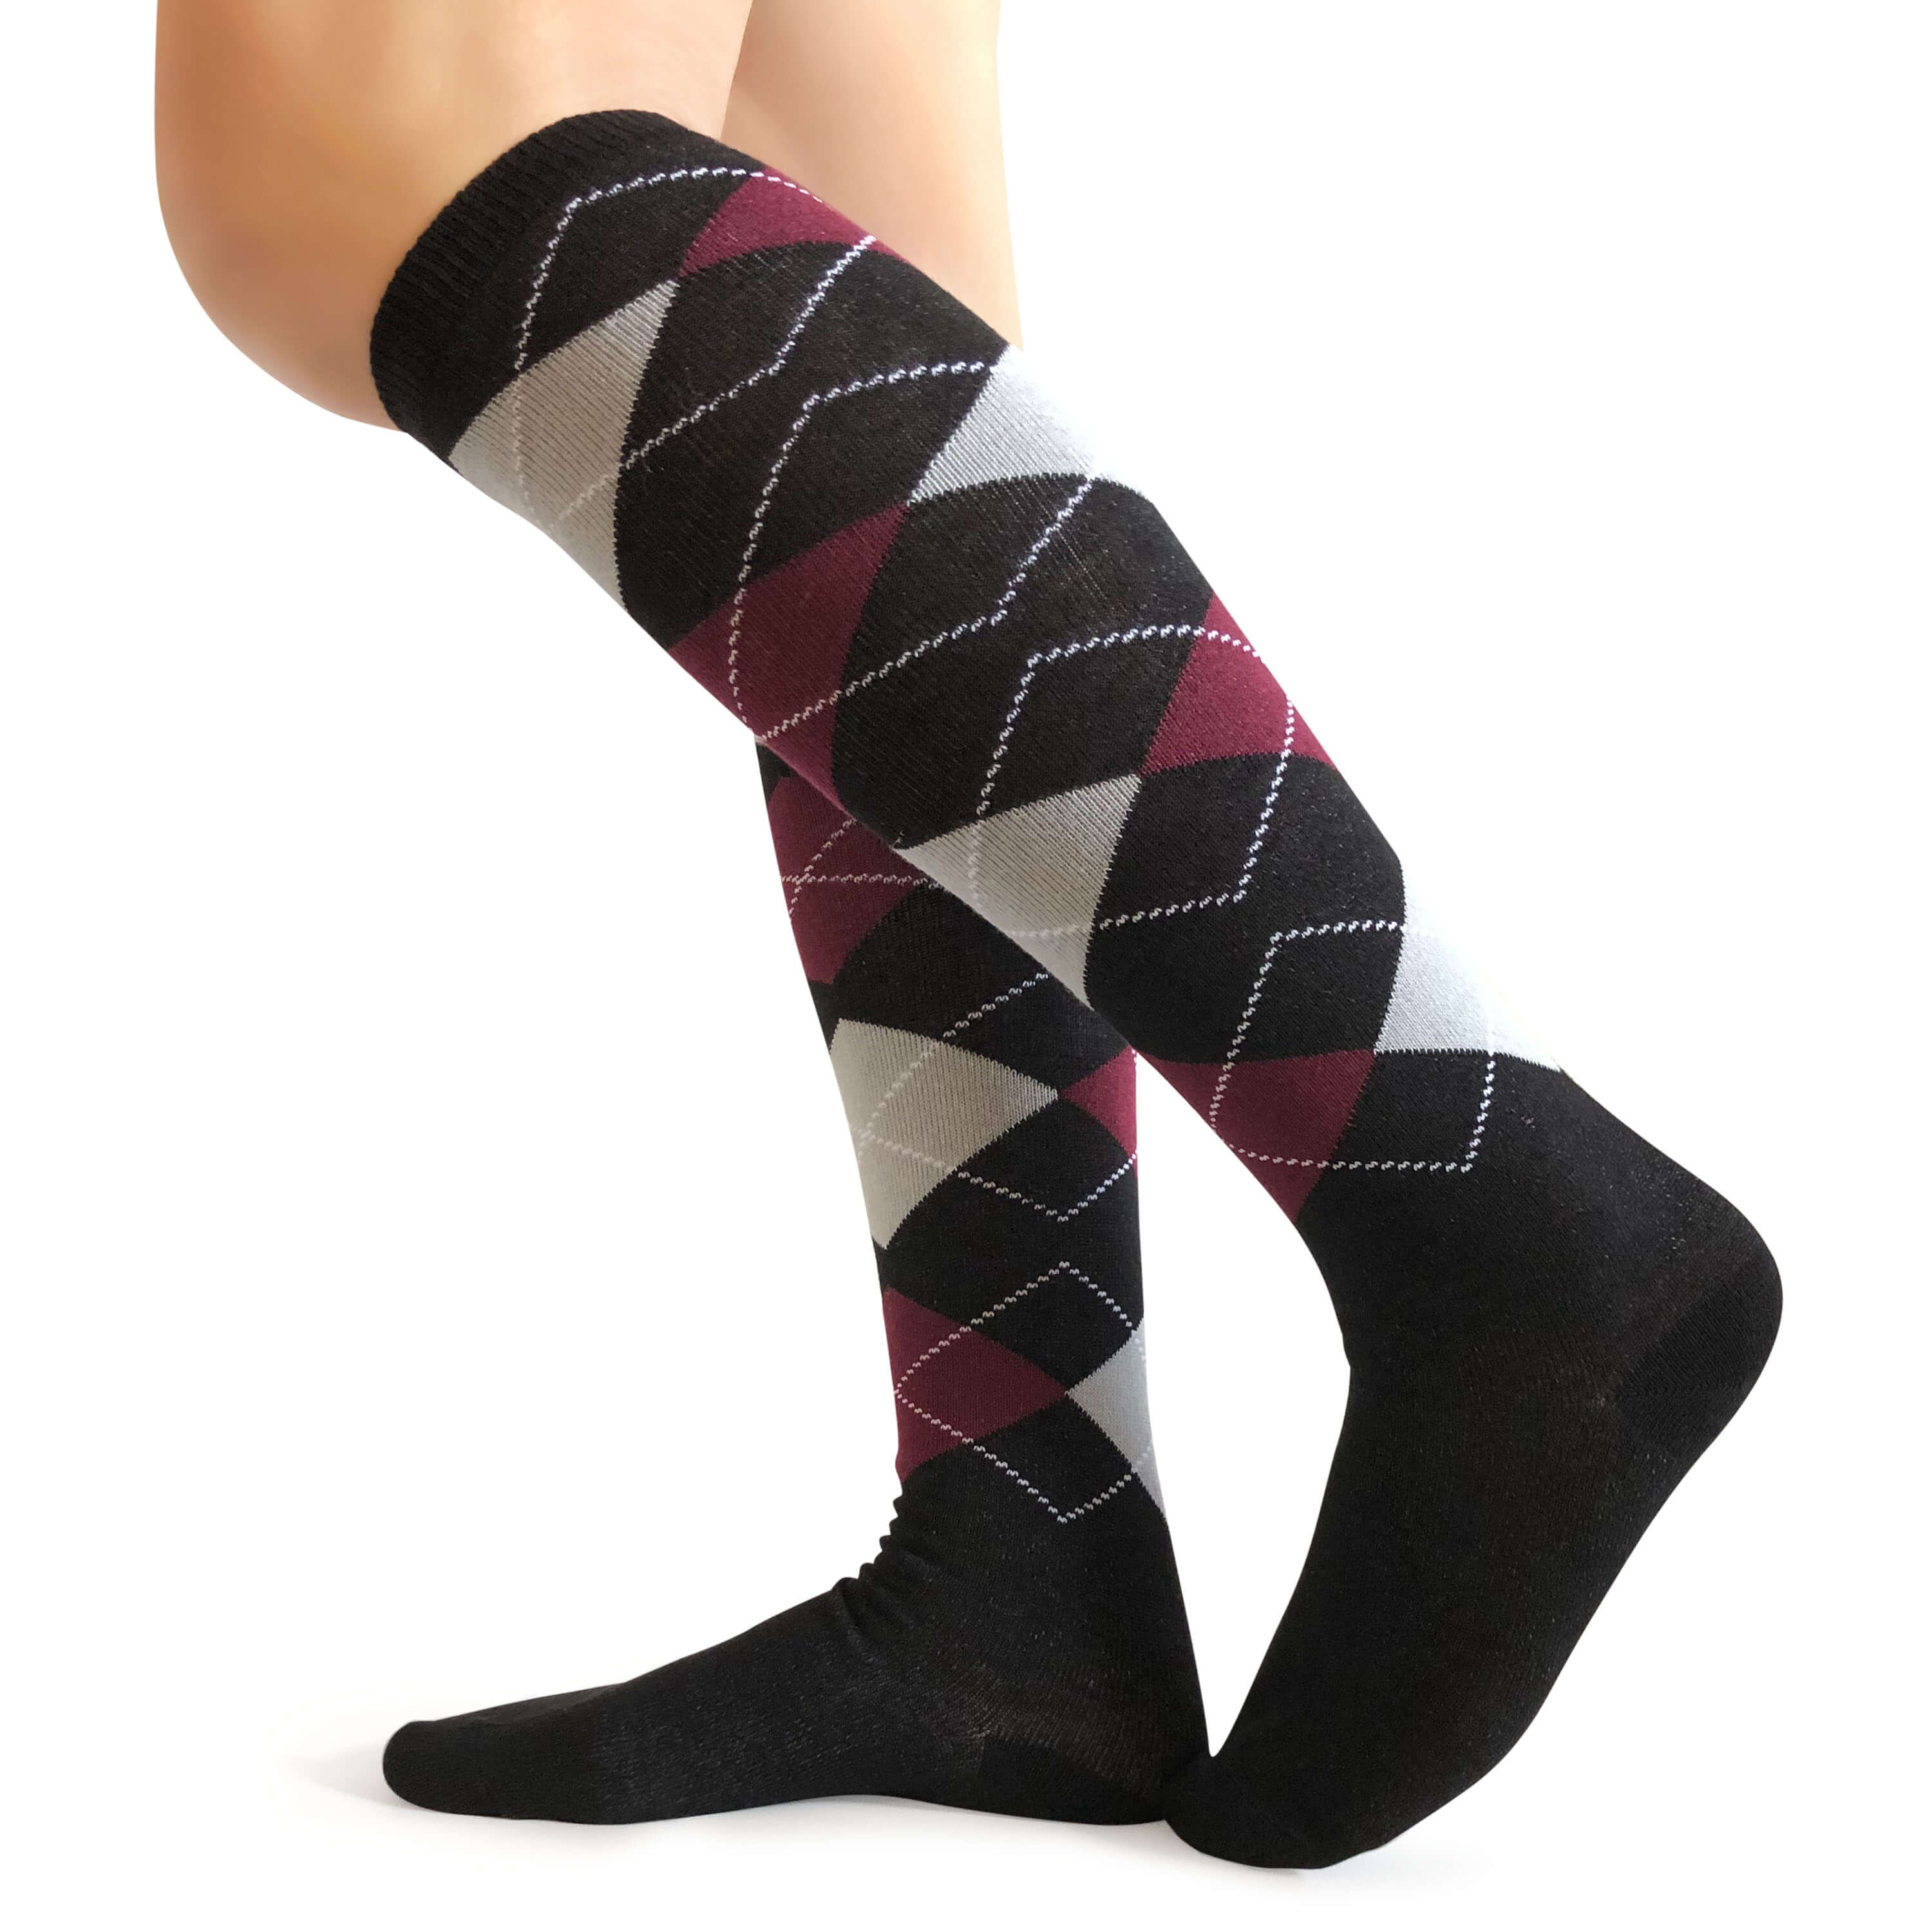 Burgundy (Maroon) & Grey Argyle Black Knee High Socks : Groomsmen Socks  Gift, Argyle Socks For Men and more